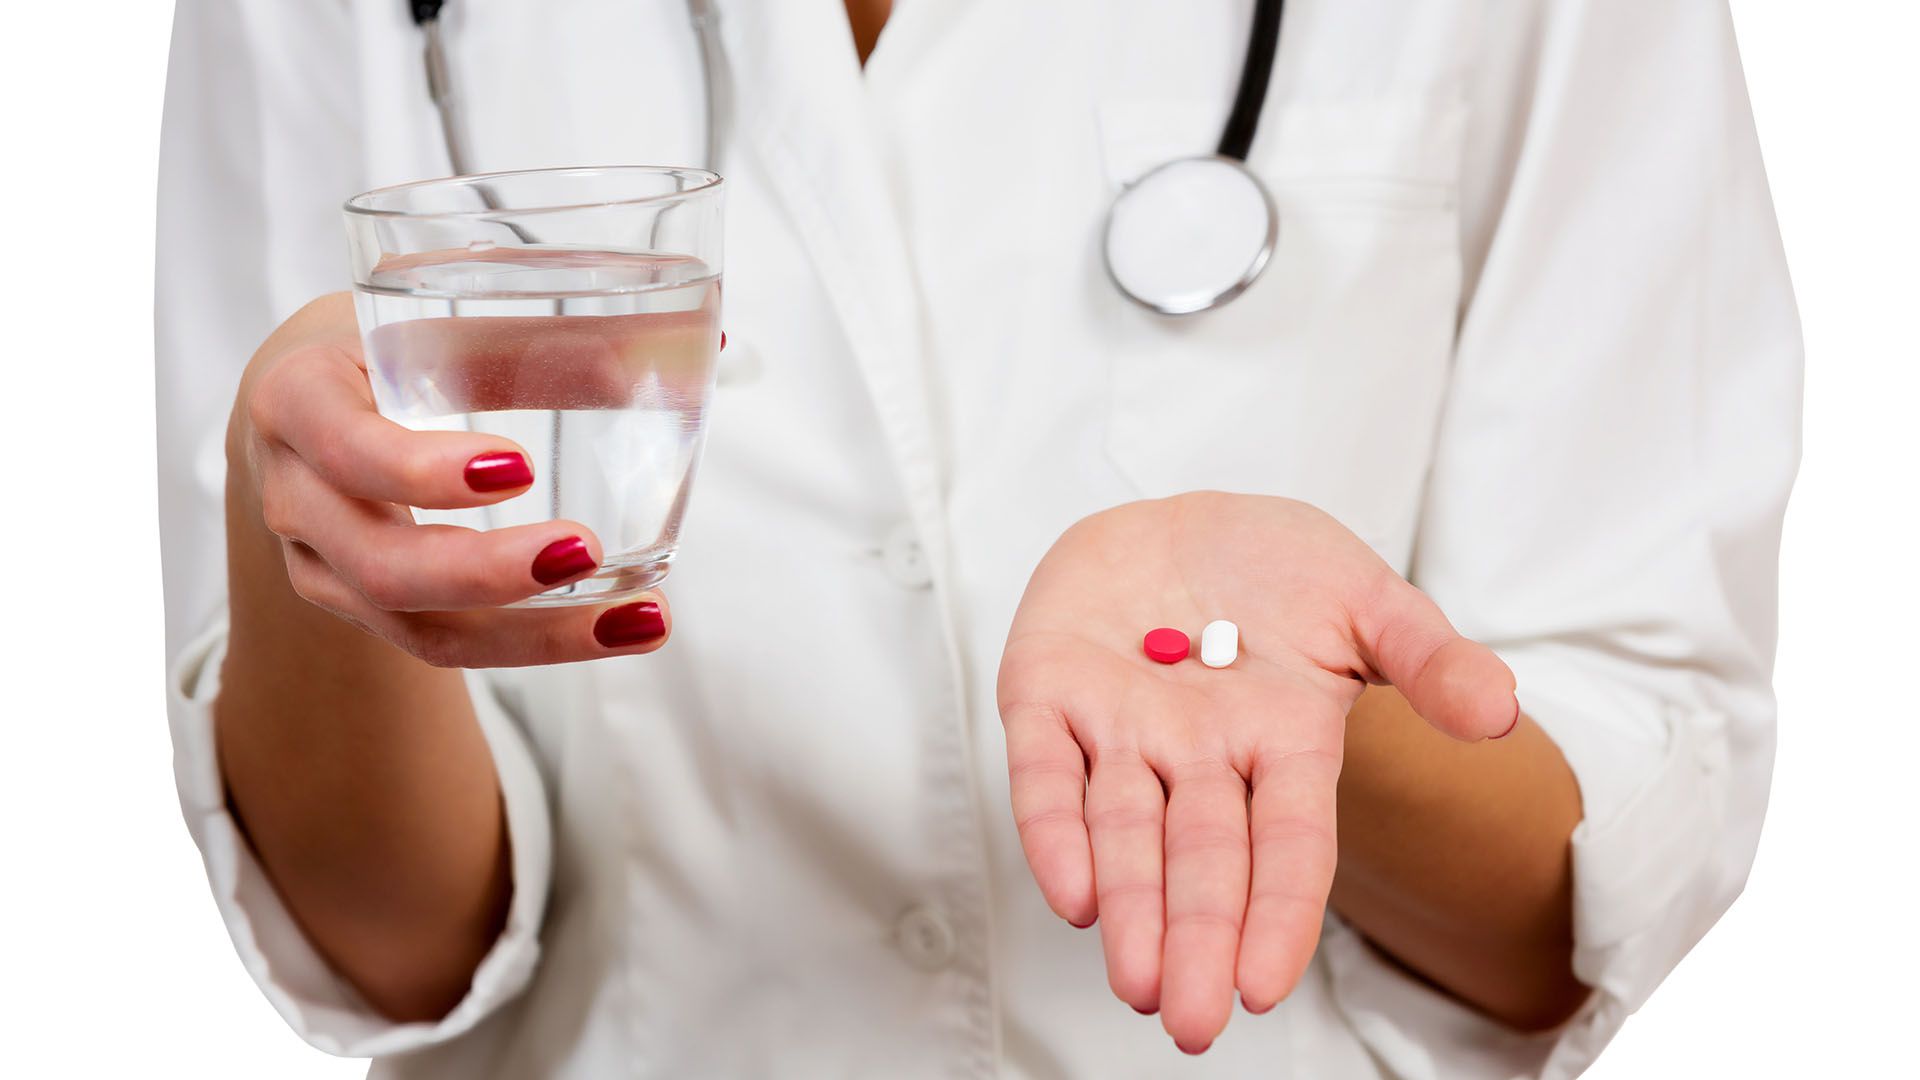 La Anmat aprobó en el último año dos medicamentos para perder peso (Shutterstock)